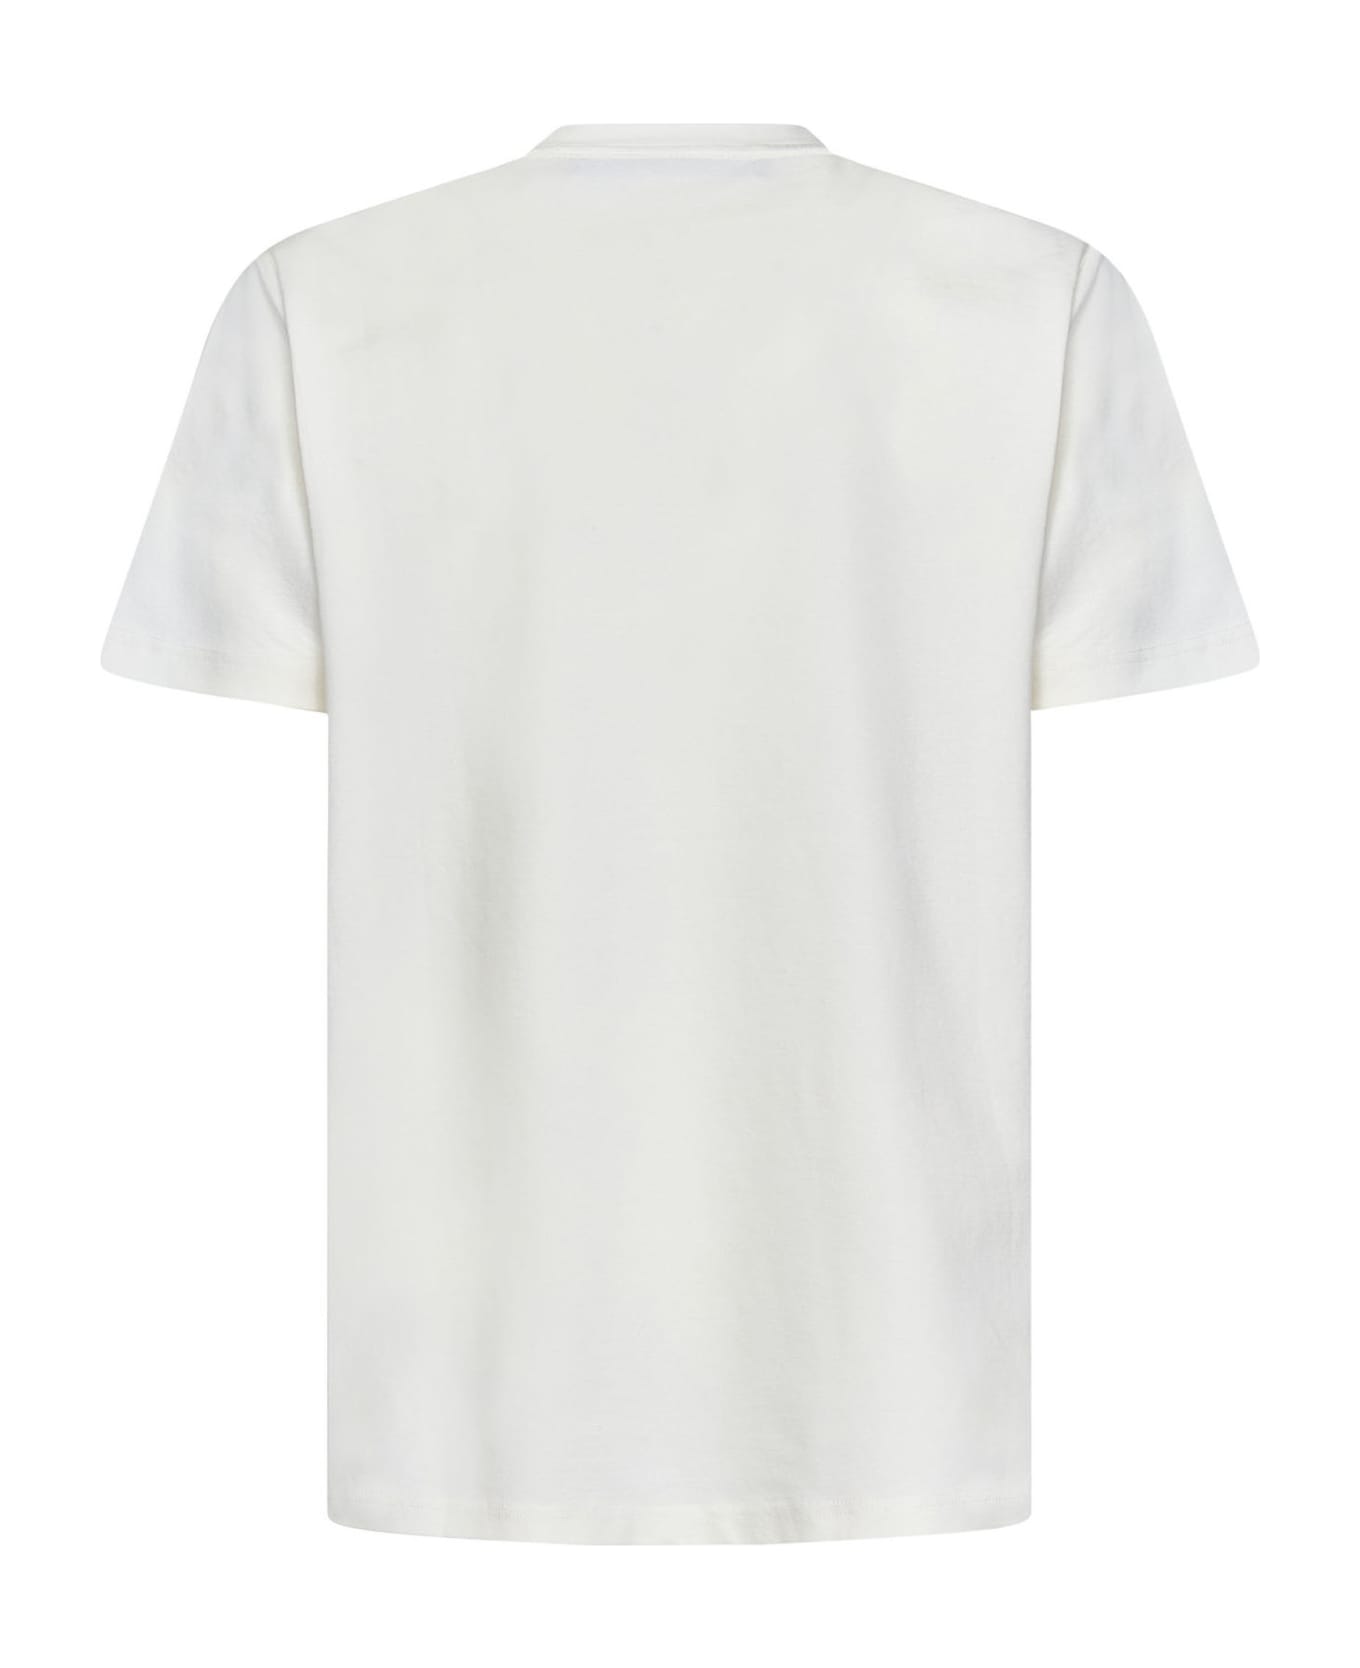 FourTwoFour on Fairfax T-shirt - White